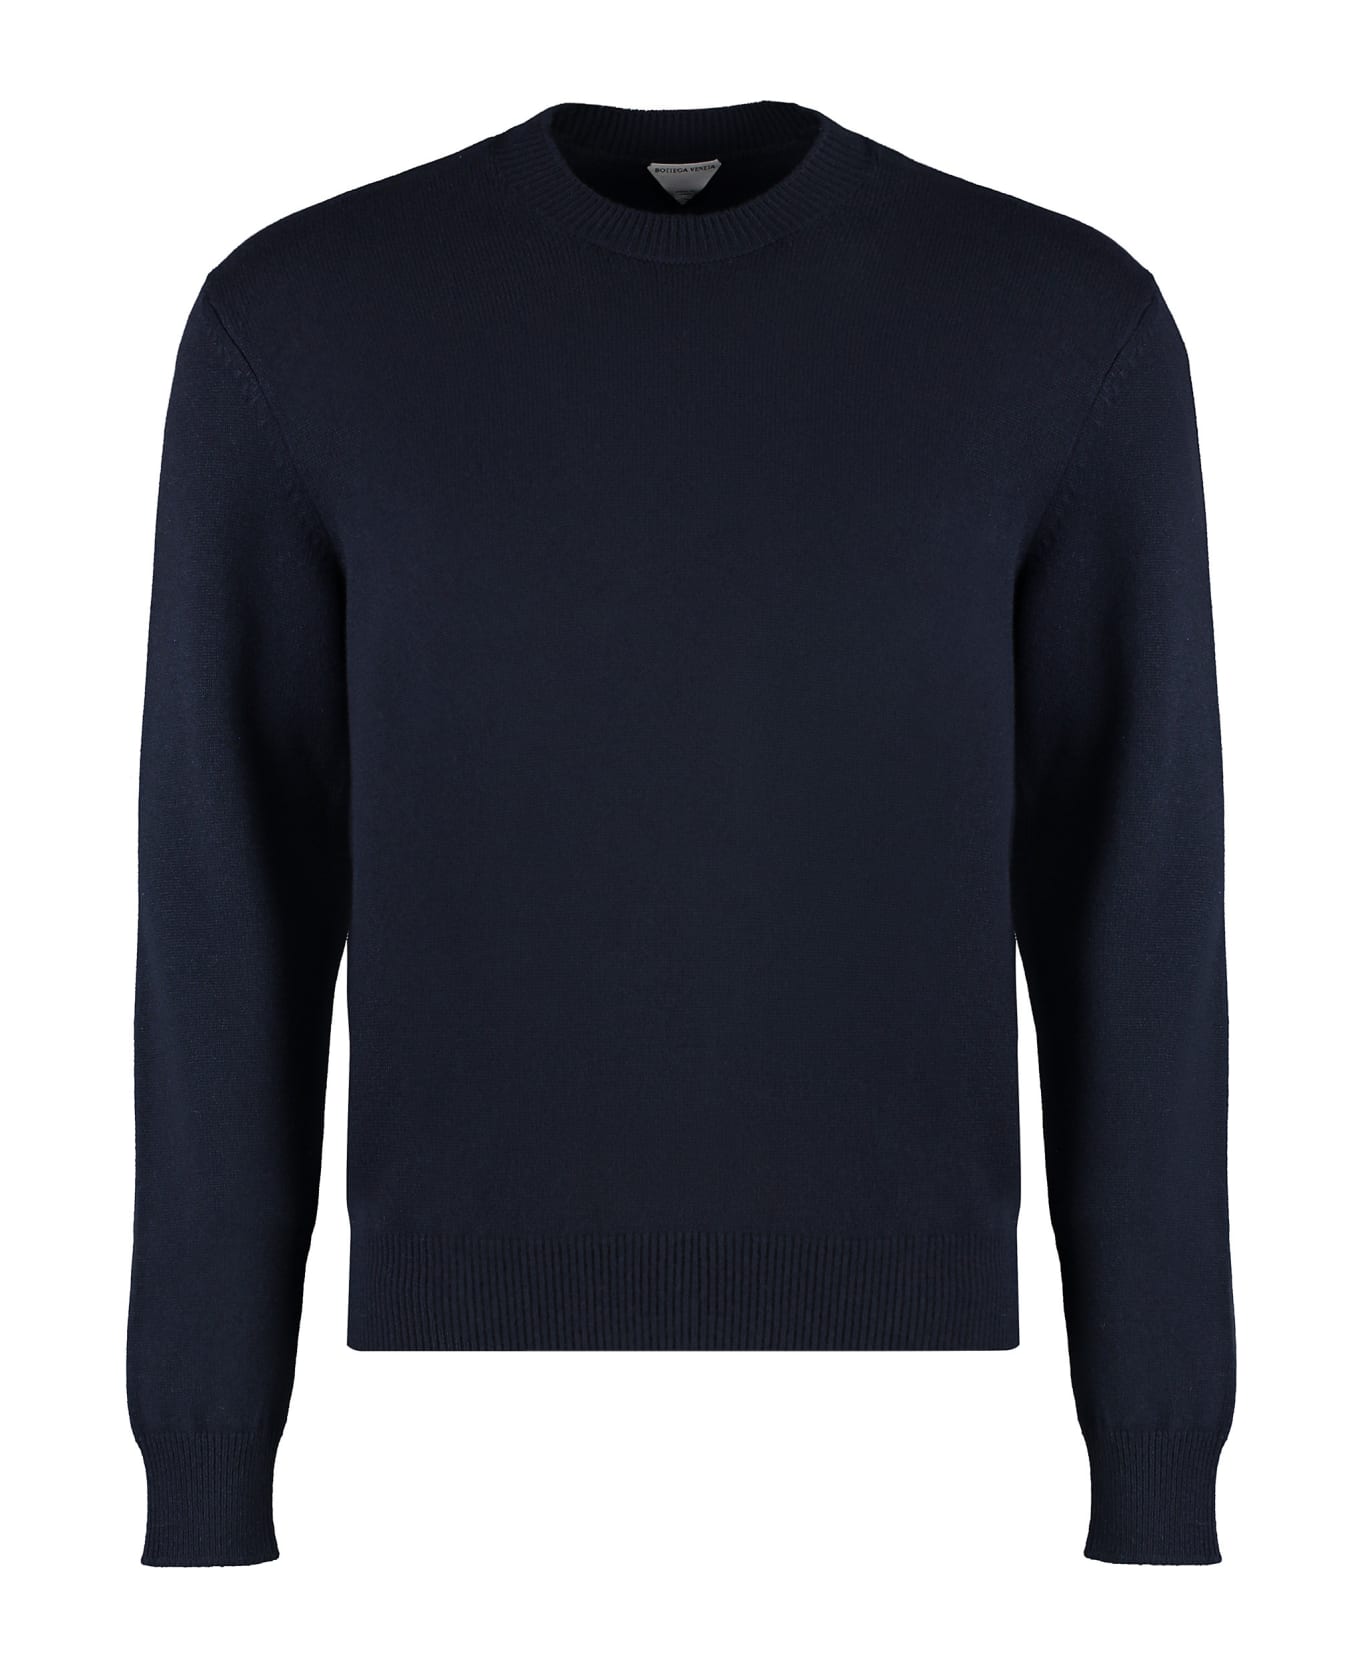 Bottega Veneta Crew-neck Cashmere Sweater